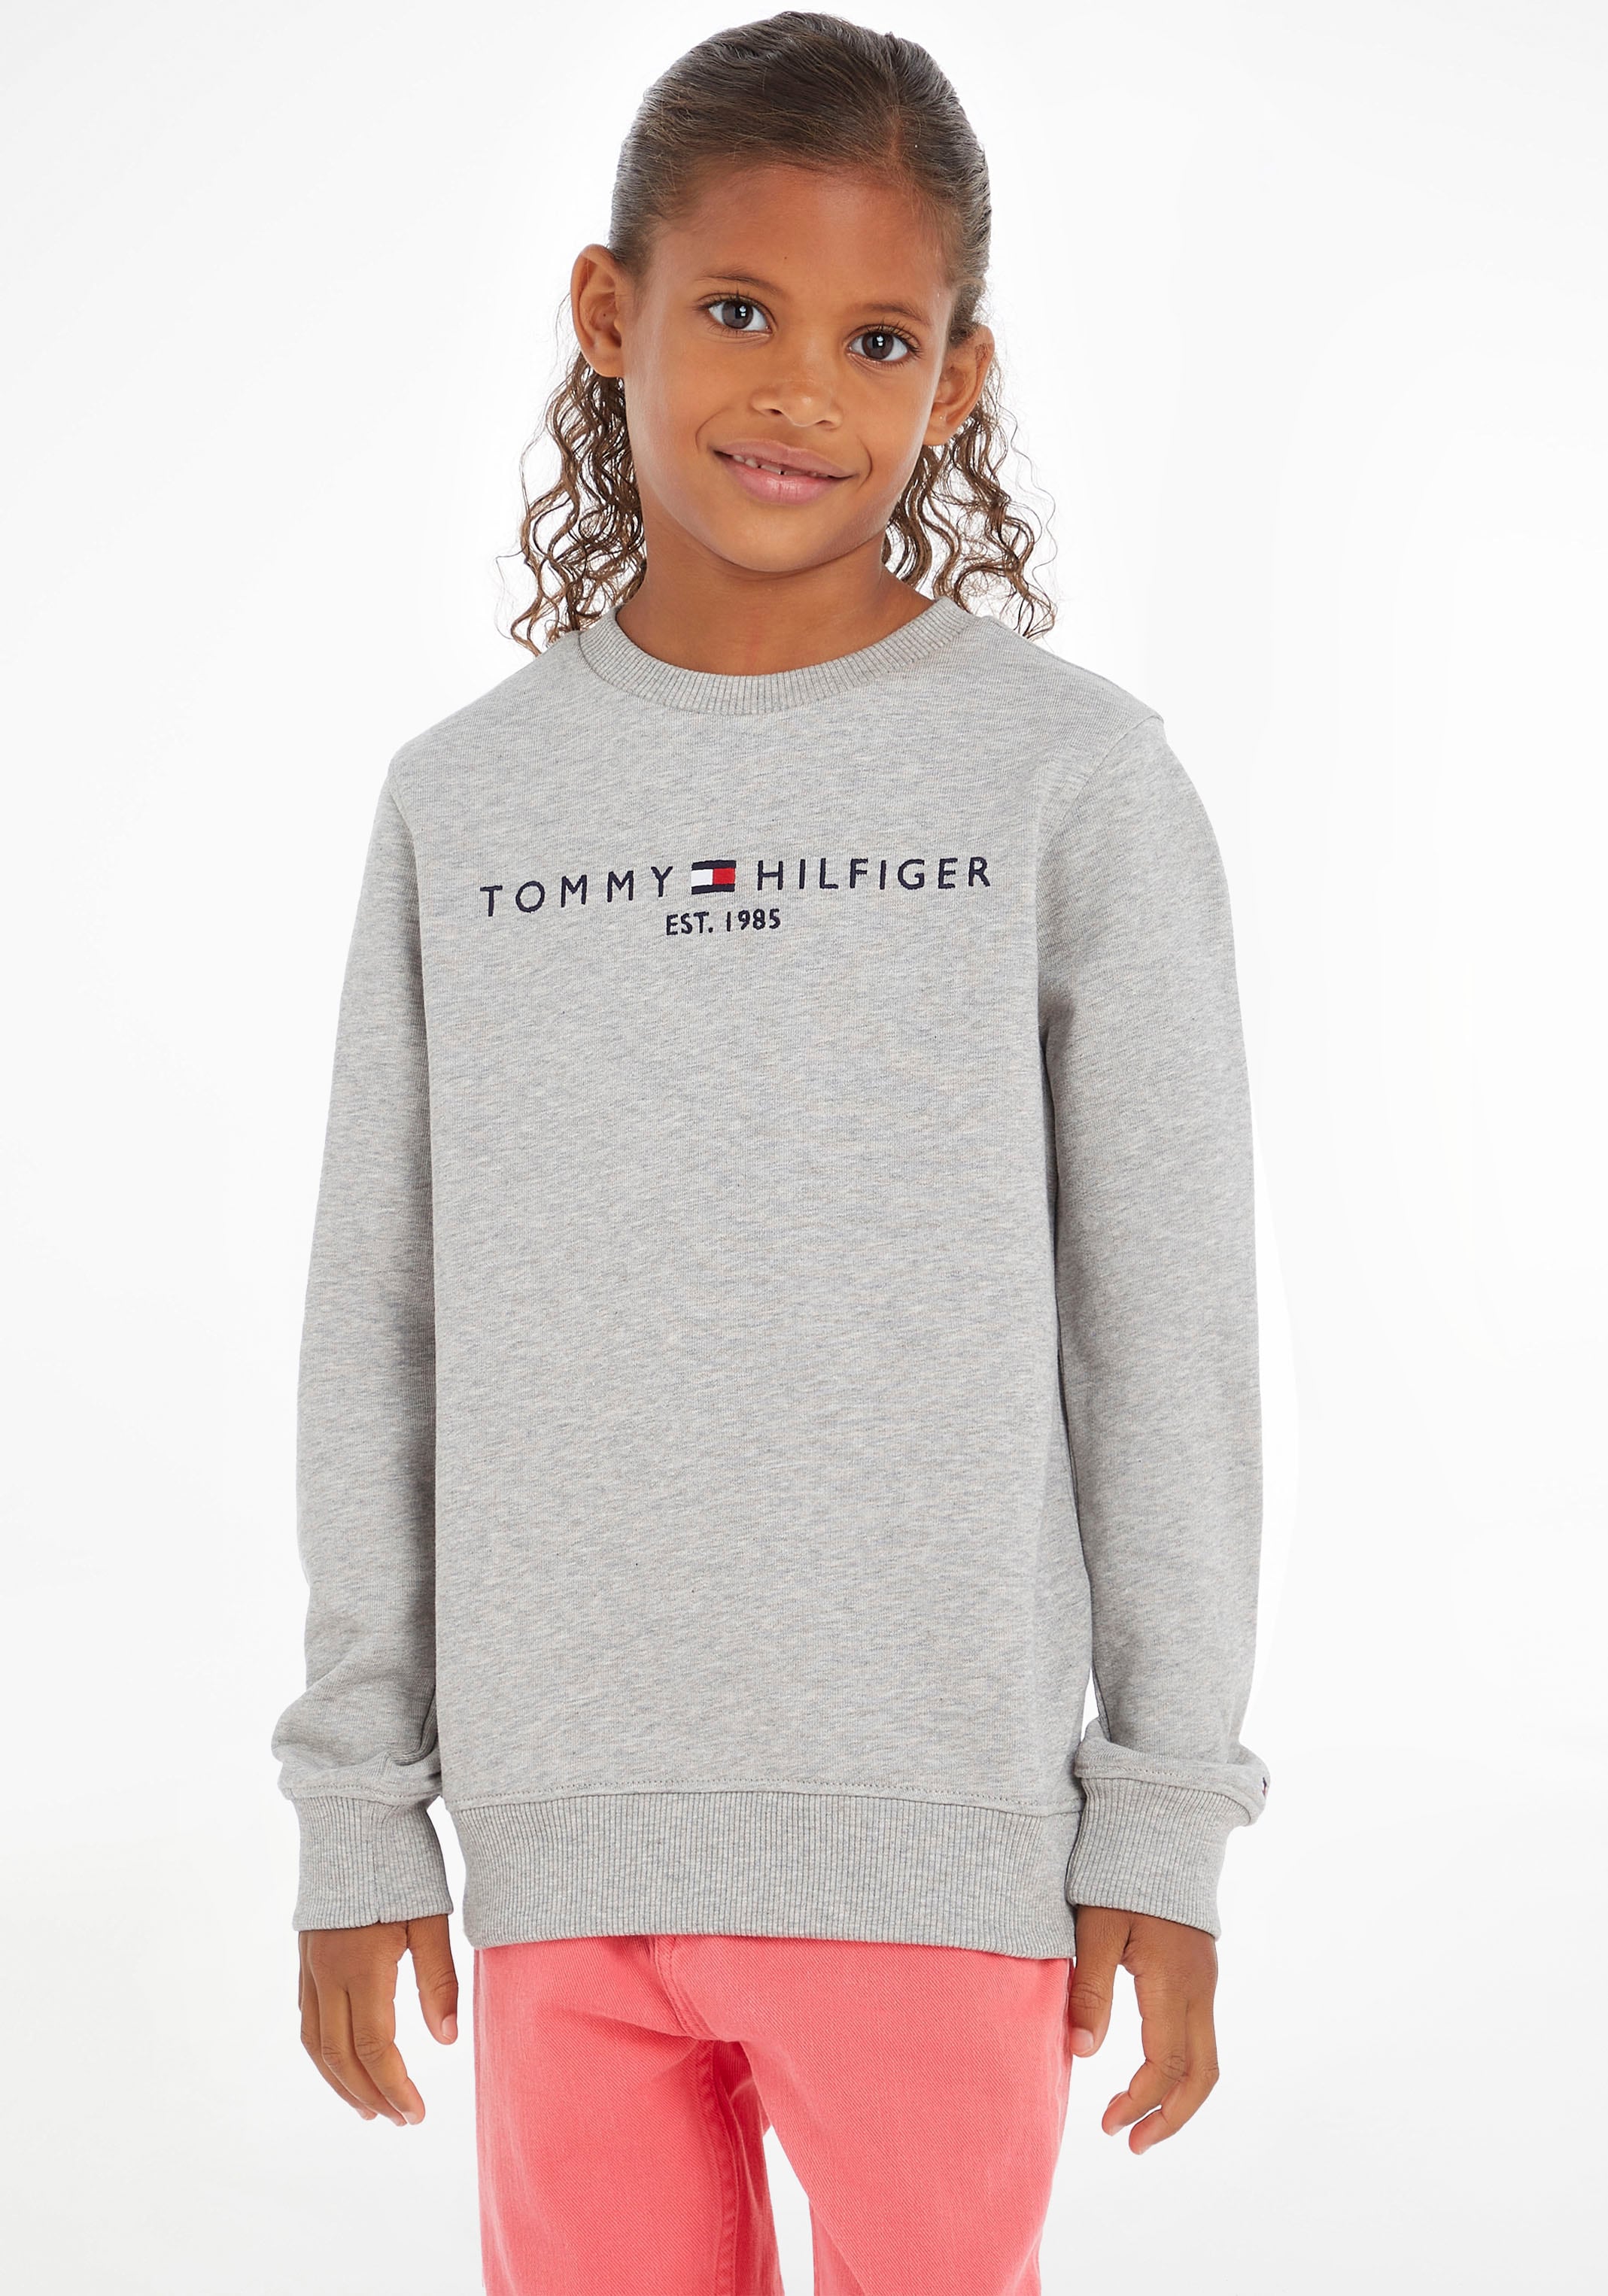 Kids OTTO Kinder bei Sweatshirt Junior Mädchen und Hilfiger Jungen MiniMe,für Tommy SWEATSHIRT«, »ESSENTIAL